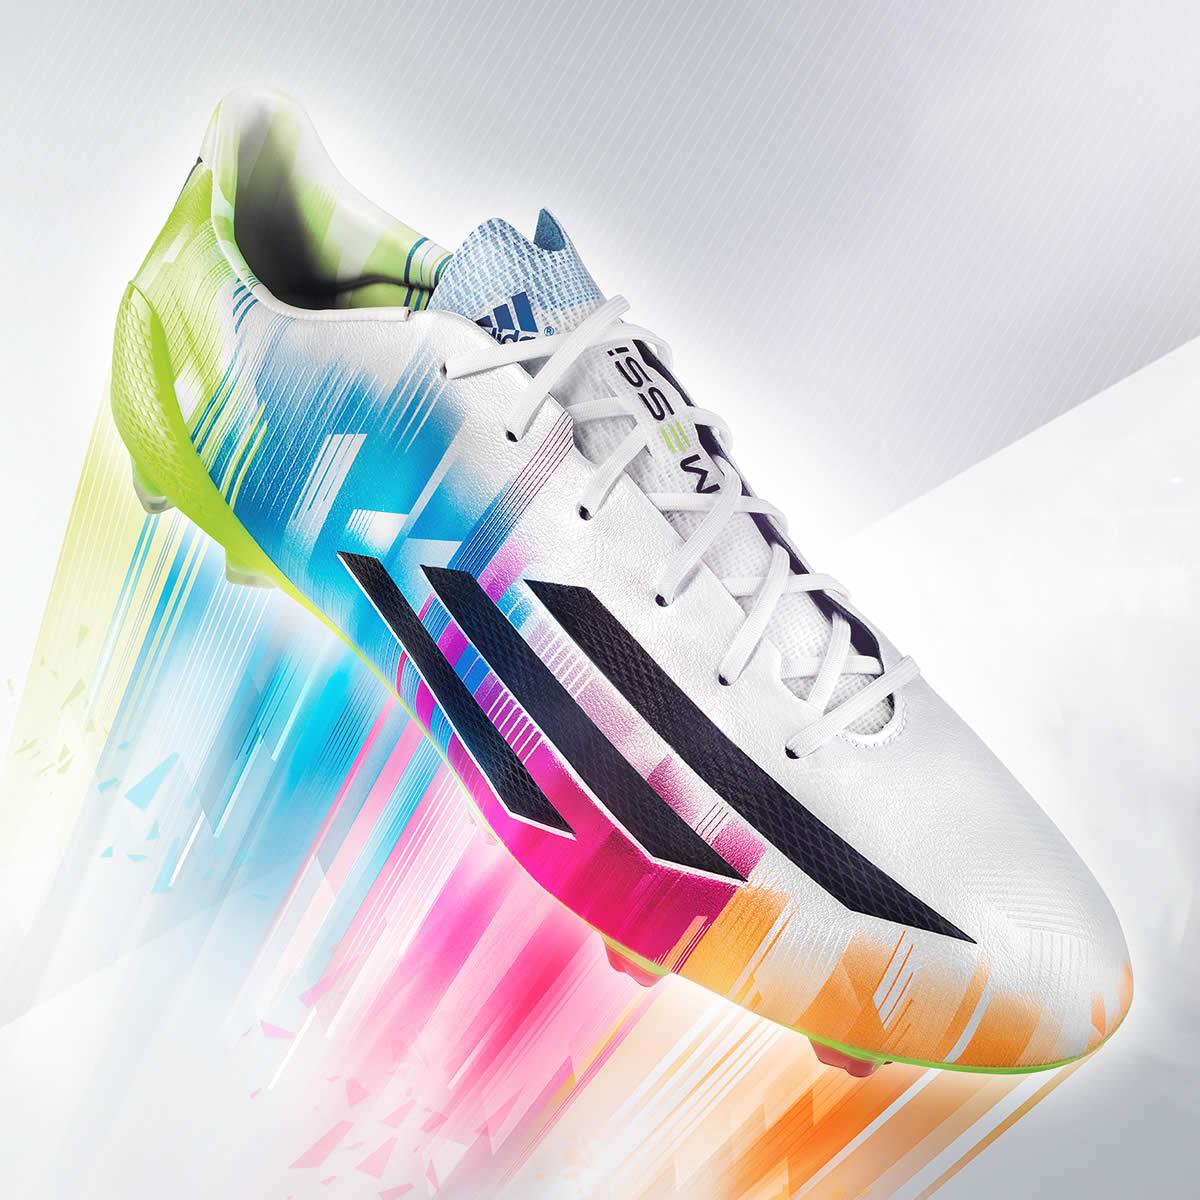 Los botines Adidas Messi estrenará el City